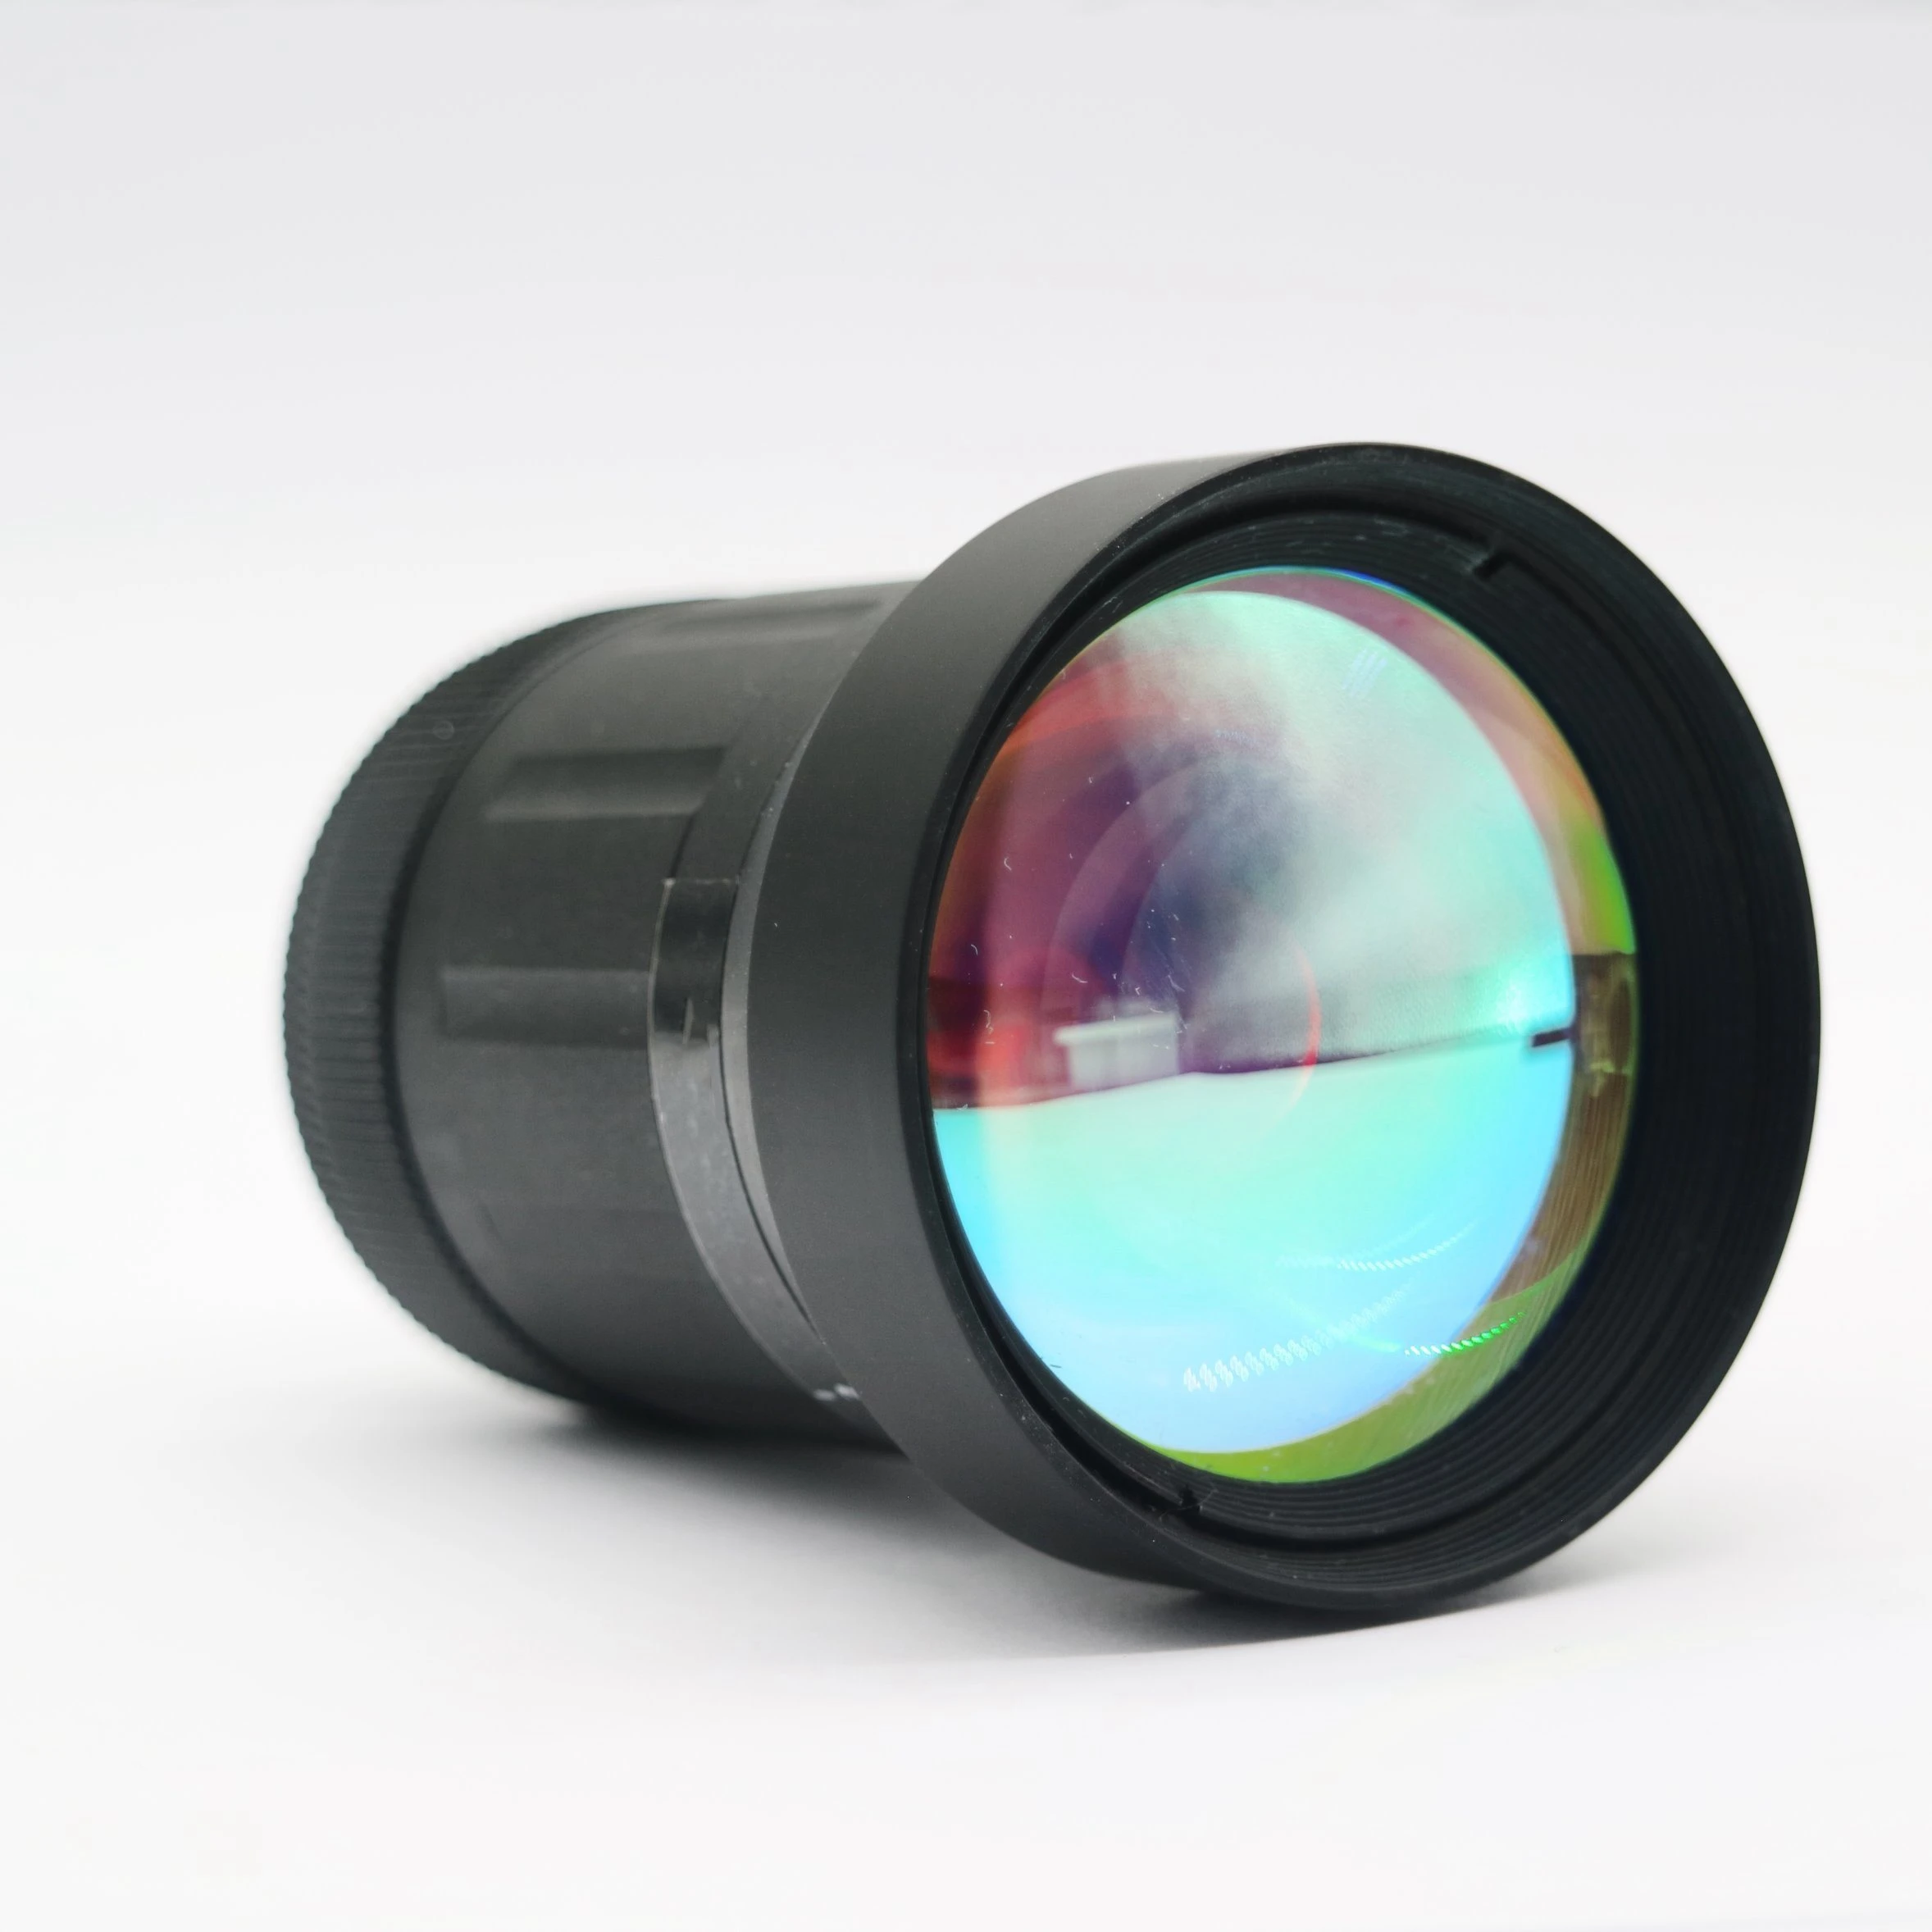 新作新品 30mm-150mm産業用直接販売供給geまたはznsレンズfl30mm-150mm赤外線ズームレンズ Buy 0.85-12  Infrared Zoom Lens,Ar Or Hd Ir Lens,Focus Length 30mm-150mm Ge Or Zns Lens  Product